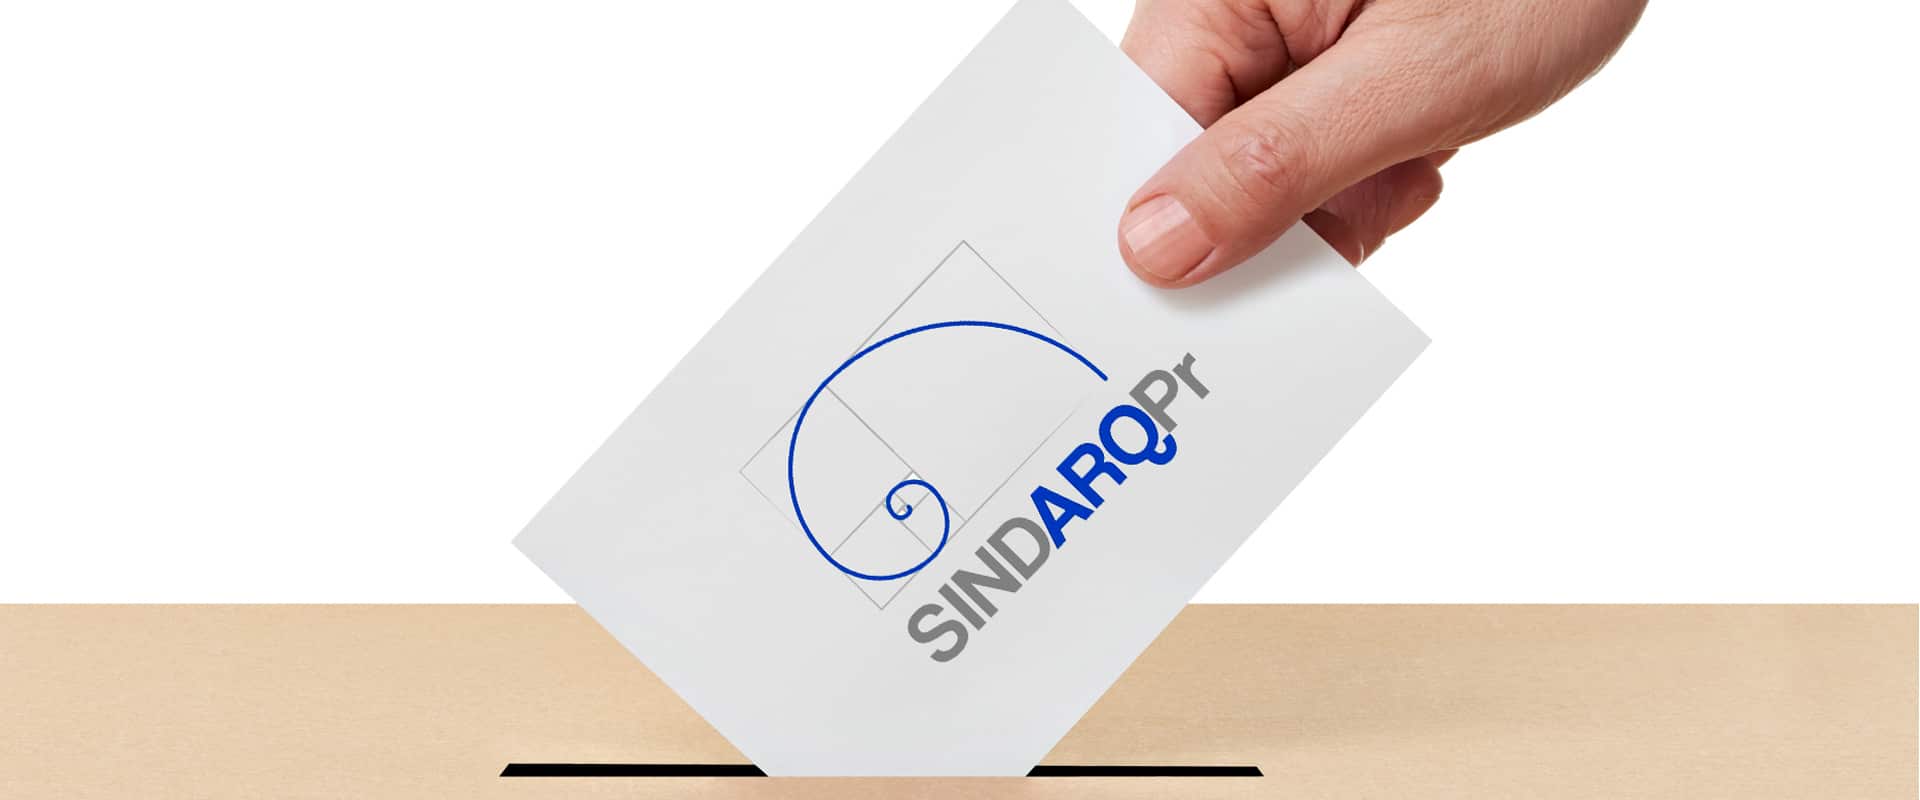 Sindarq/PR homologa chapa e eleições para o triênio 2019/2021 acontecem em 03/10